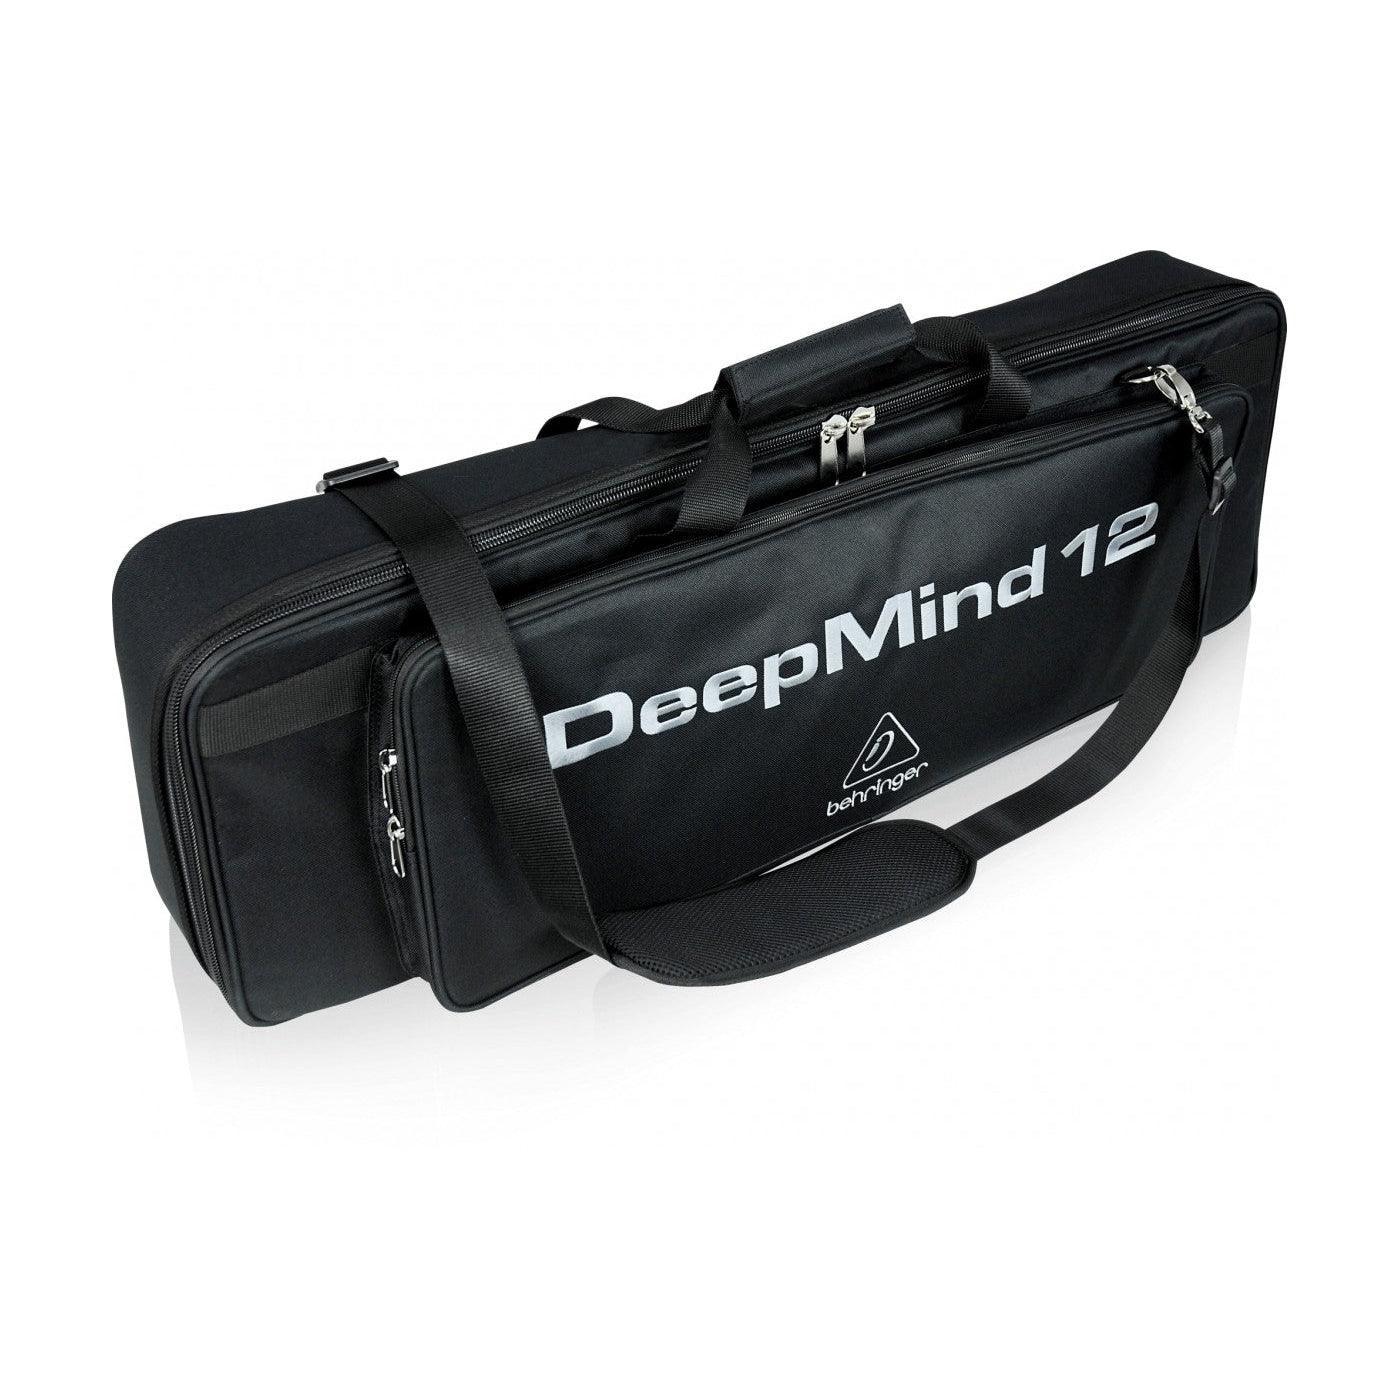 Behringer DeepMind 12-TB Transport Bag